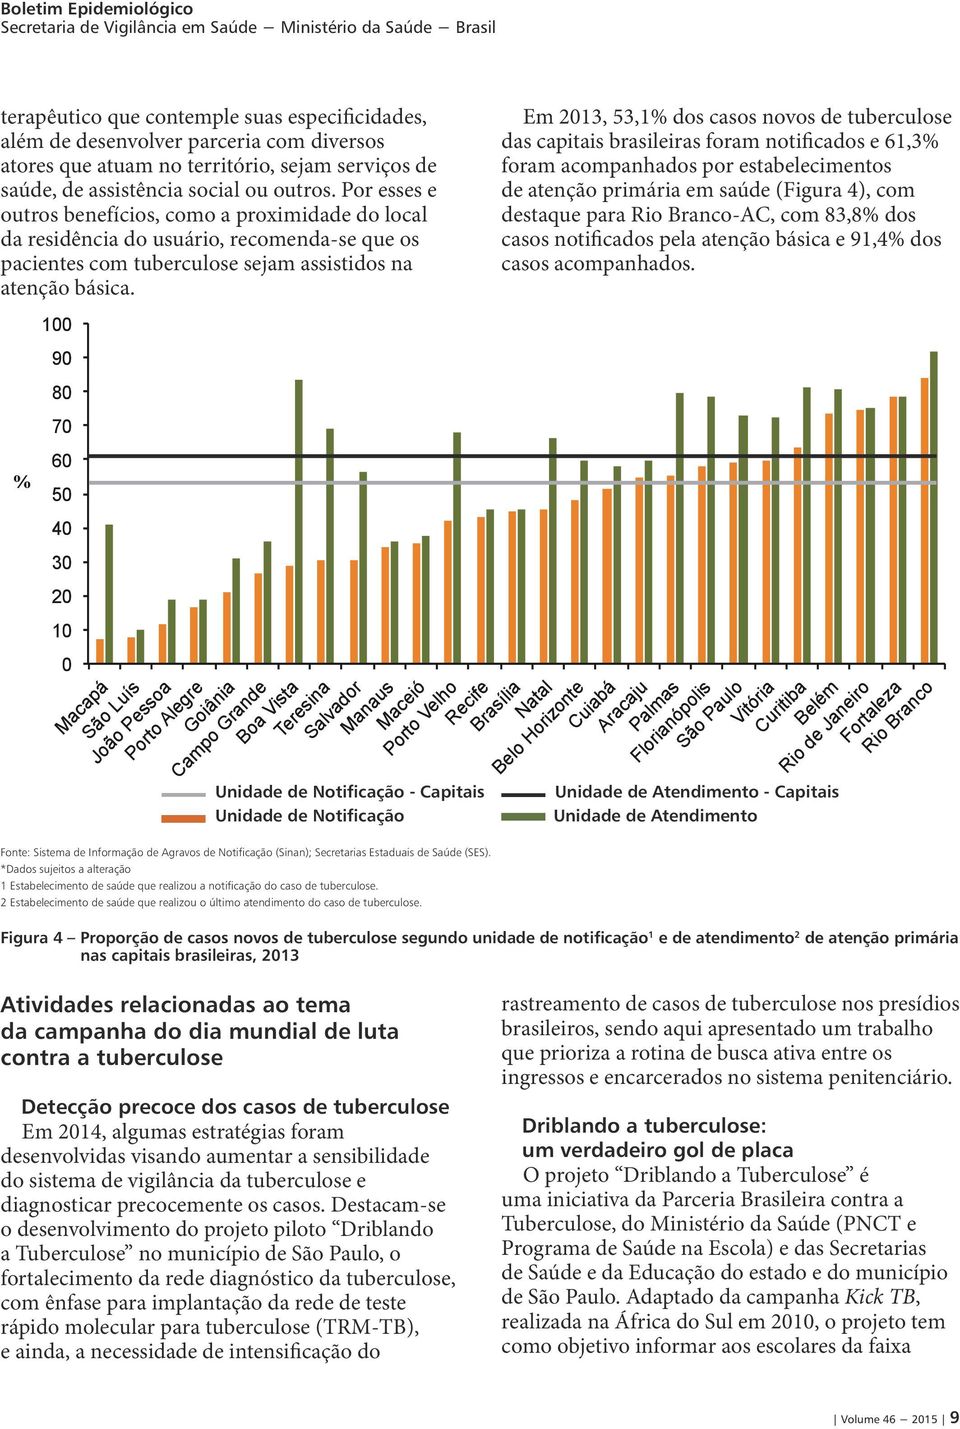 Em 2013, 53,1% dos casos novos de tuberculose das capitais brasileiras foram notificados e 61,3% foram acompanhados por estabelecimentos de atenção primária em saúde (Figura 4), com destaque para Rio